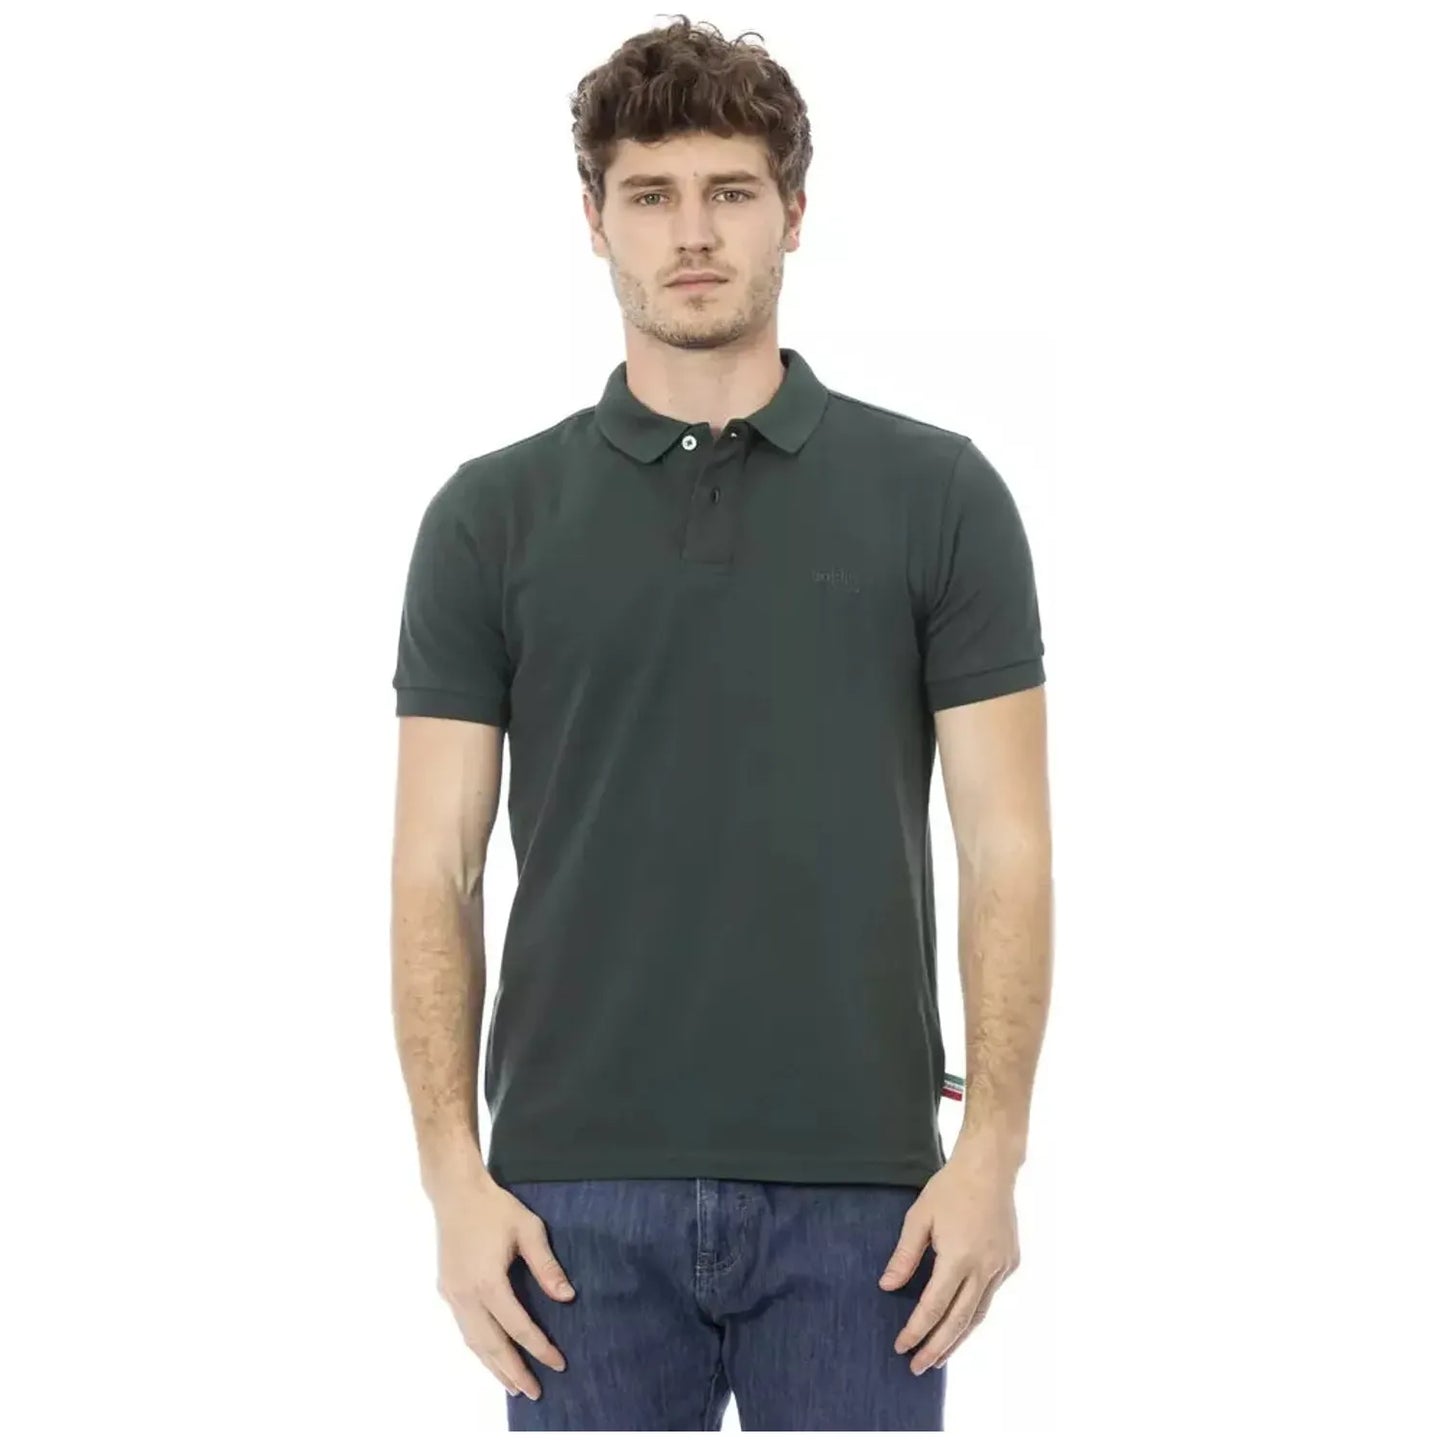 Baldinini Trend Chic Embroidered Cotton Polo Shirt in Green green-cotton-polo-shirt-17